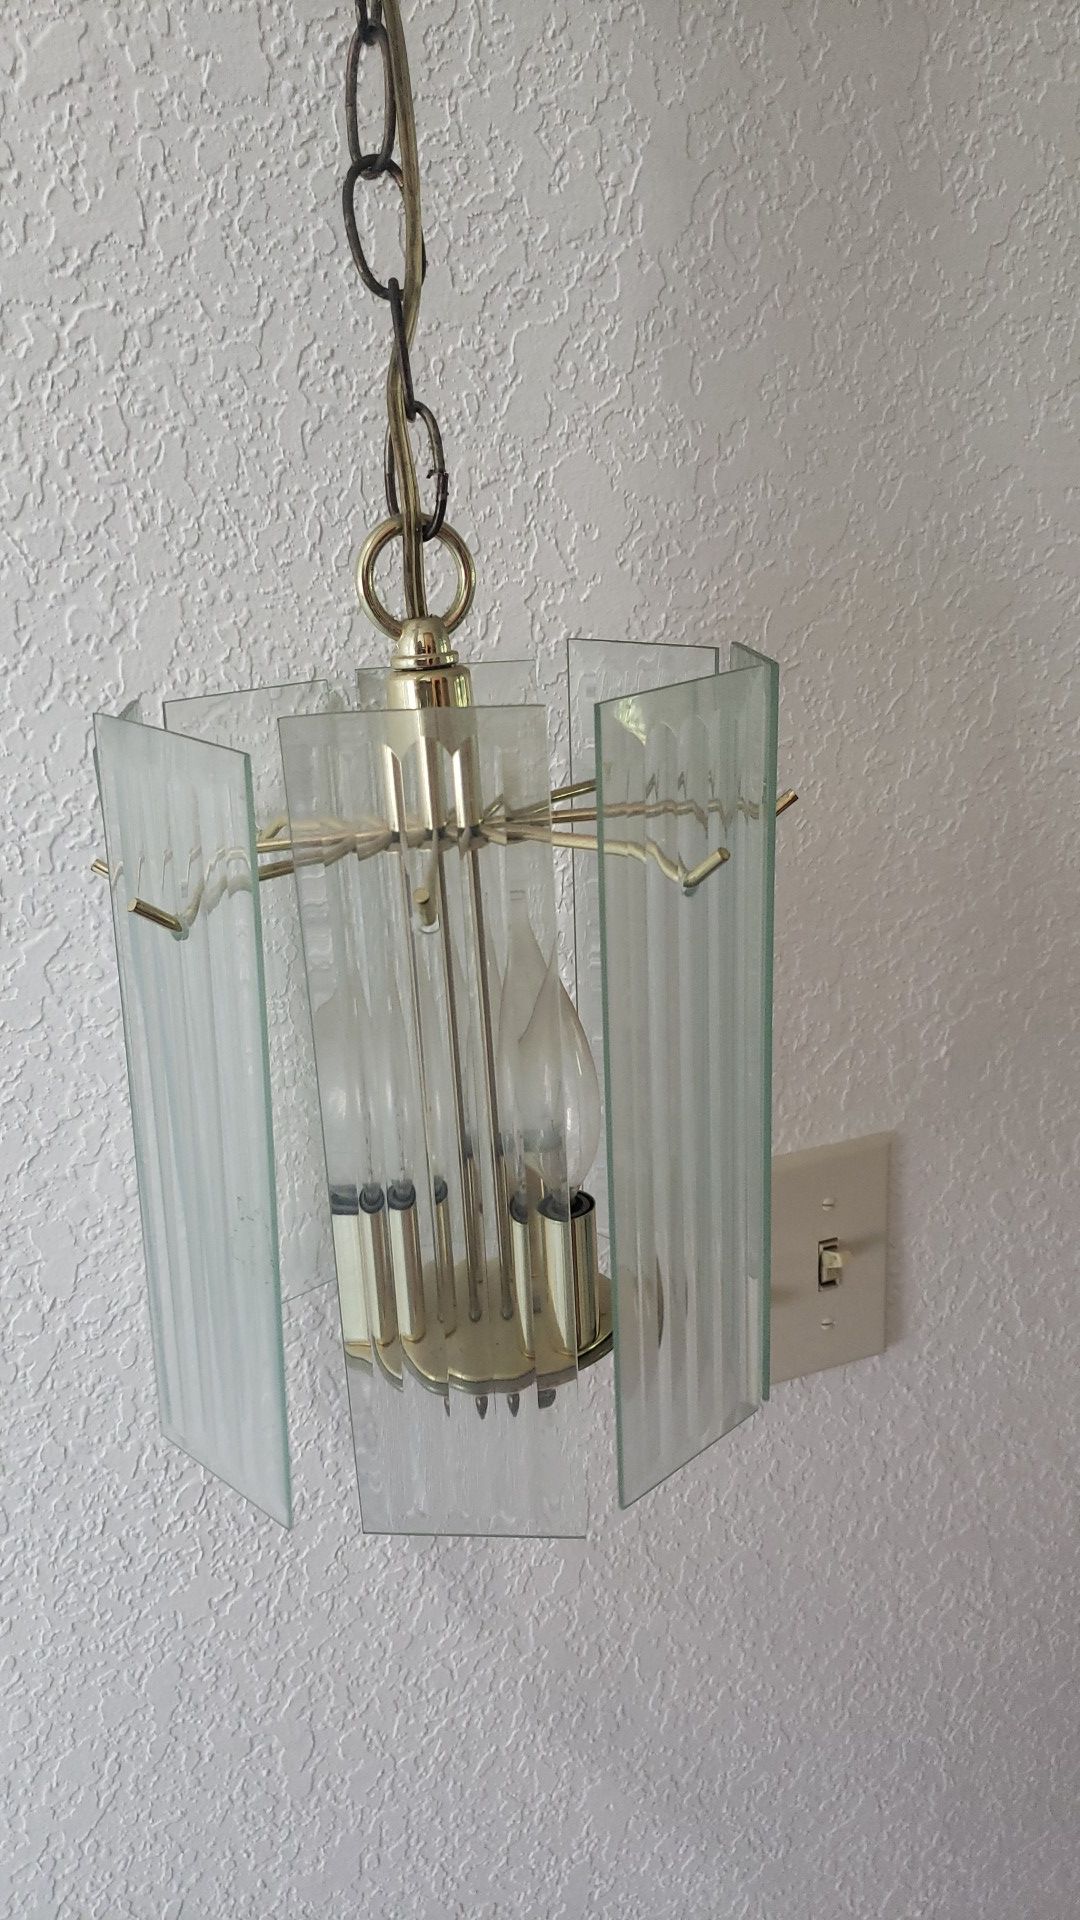 Hanging chandelier light fixture